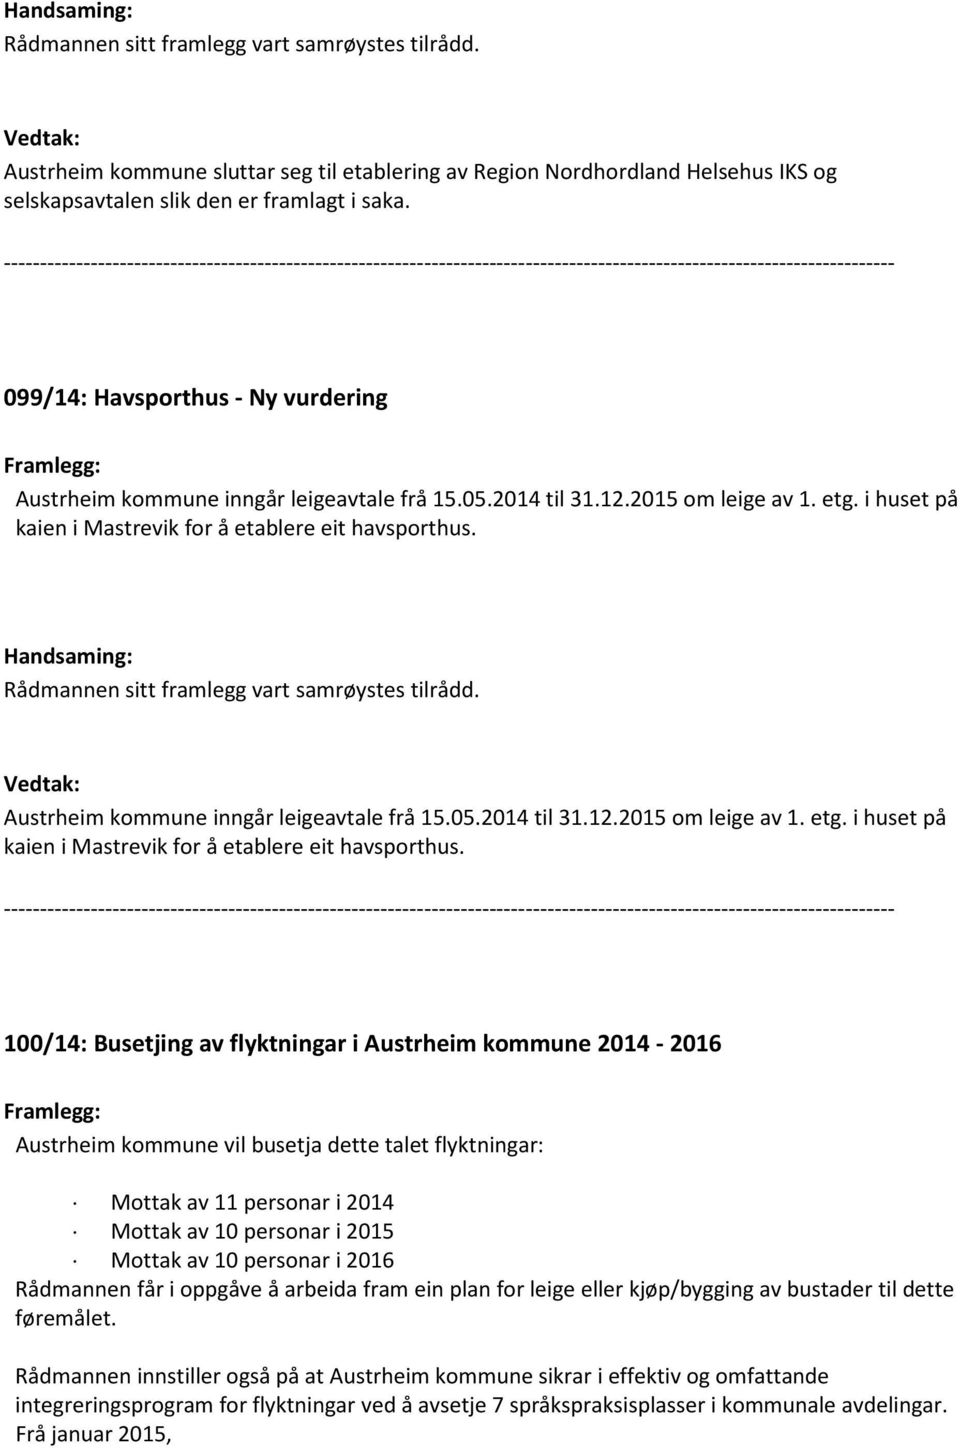 Rådmannen sitt framlegg vart samrøystes tilrådd. Austrheim kommune inngår leigeavtale frå 15.05.2014 til 31.12.2015 om leige av 1. etg. i huset på kaien i Mastrevik for å etablere eit havsporthus.